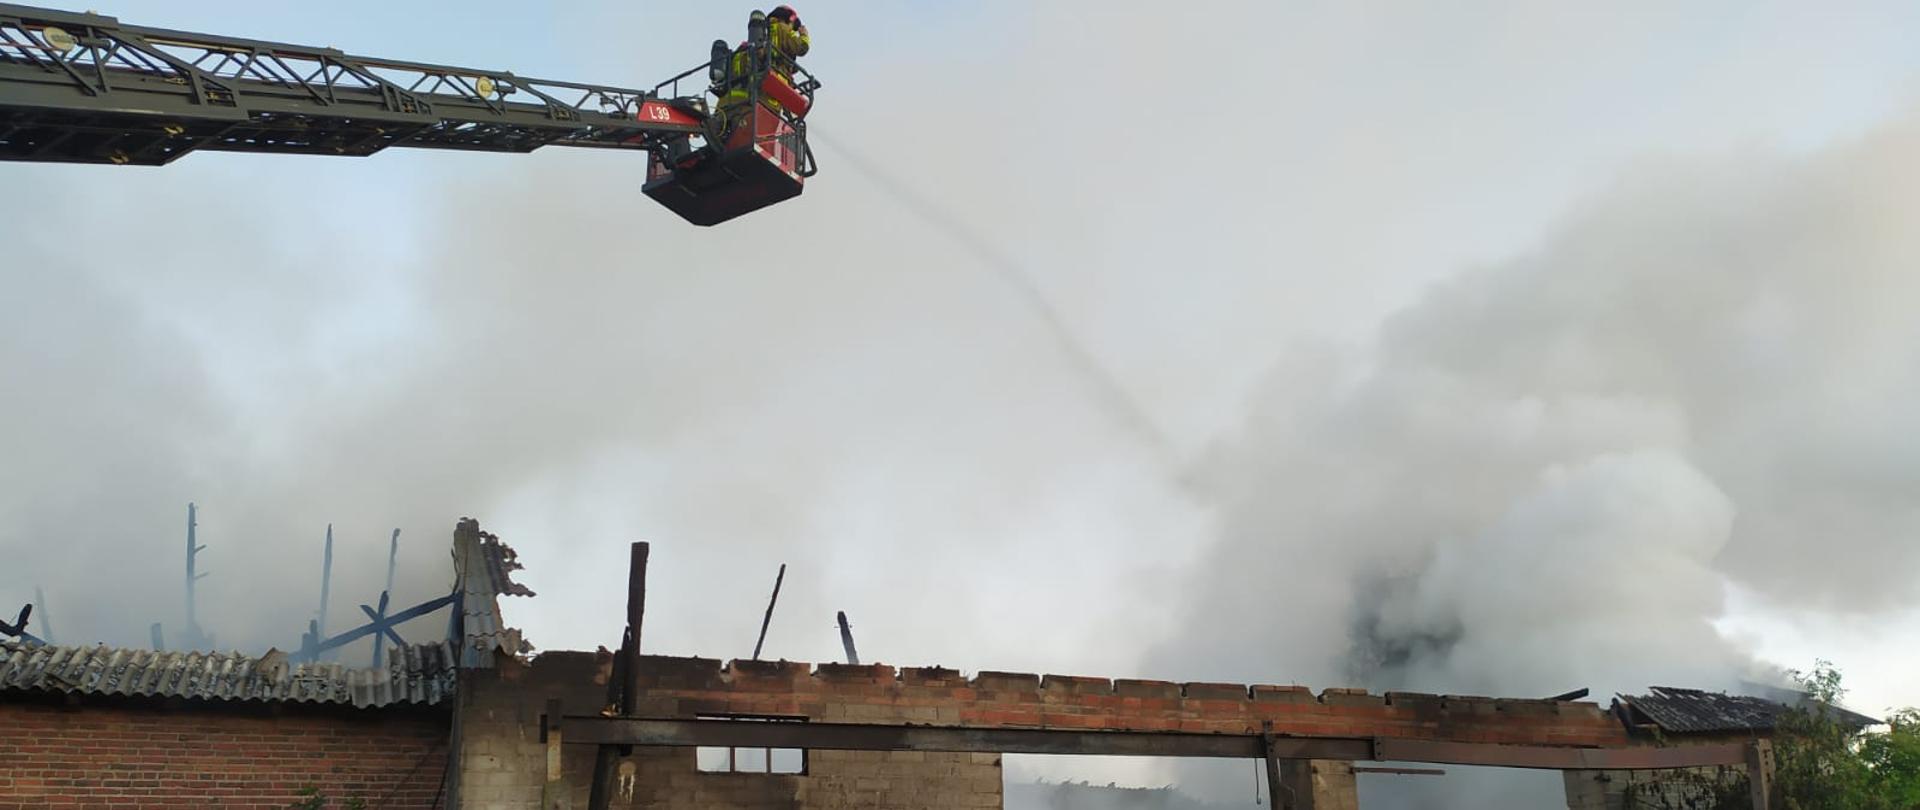 Zdjęcie przedstawia zniszczony budynek inwentarski po pożarze. Nad budynkiem bez dachu unosi się dym oraz para wodna. Na zdjęciu widać strażaka stojącego przed budynkiem oraz dwóch strażaków znajdujących się w koszu drabiny mechanicznej, dogaszających tlącą się słomę. 